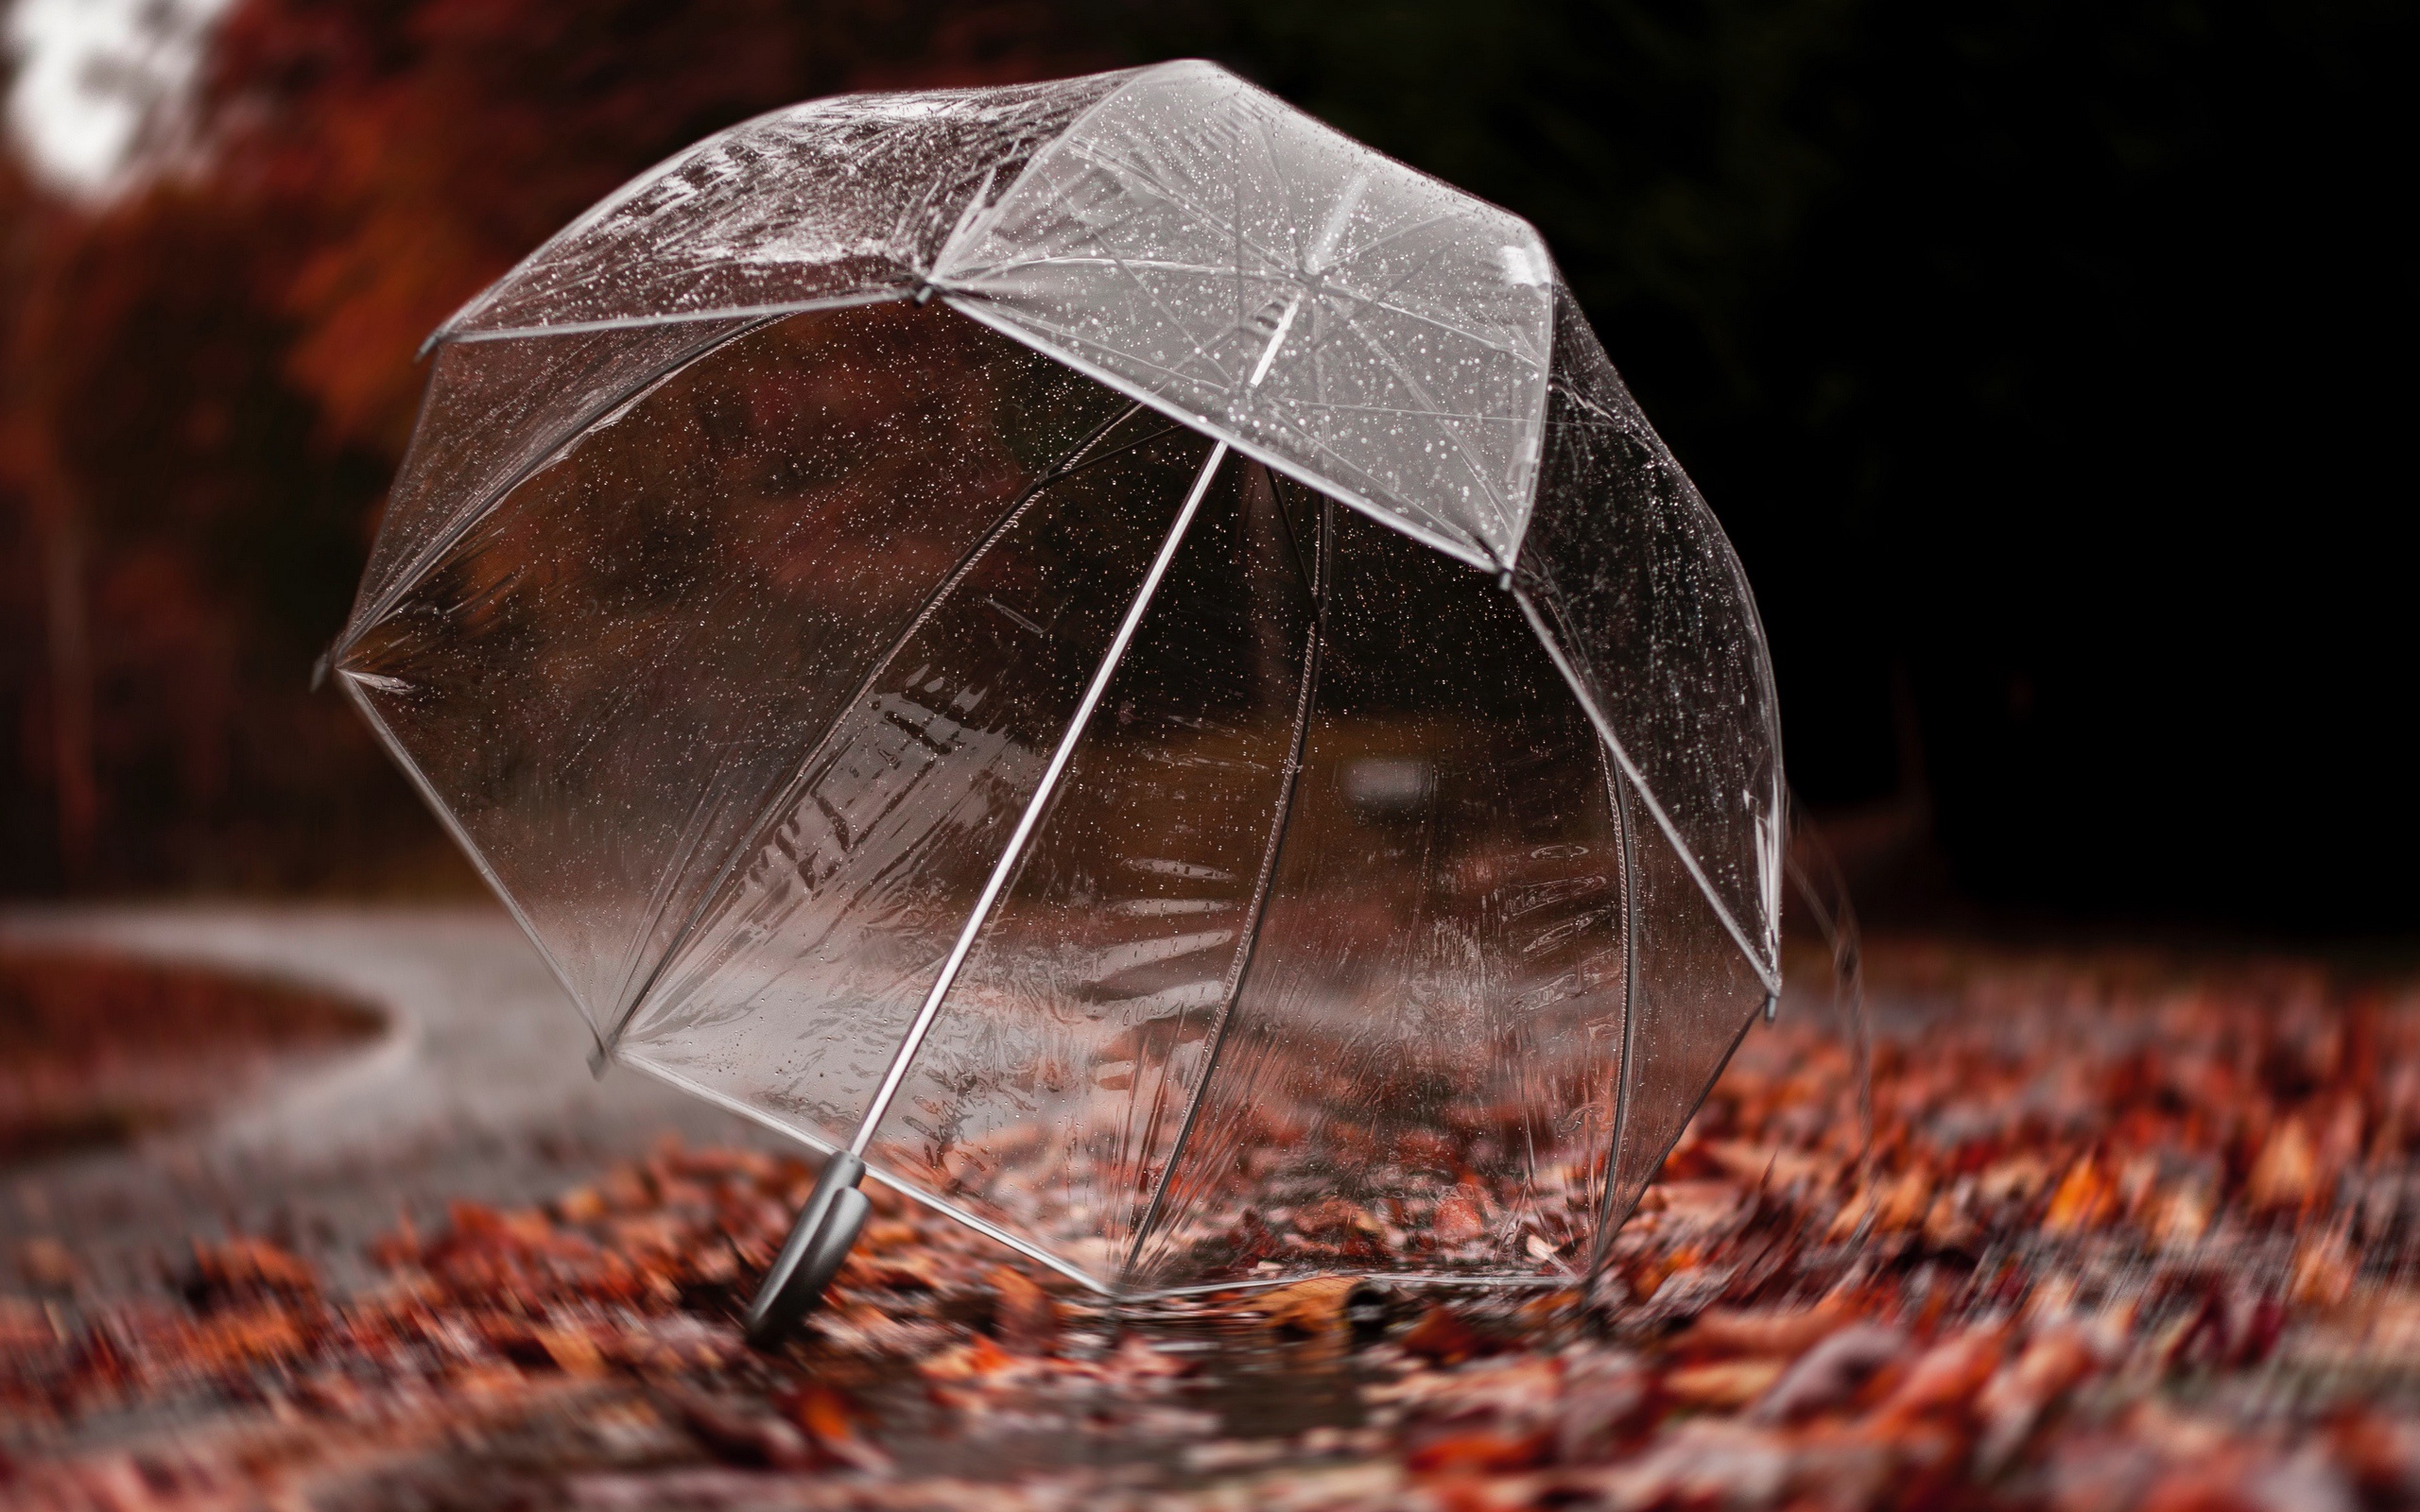 дождь осенью фото красивые картинки